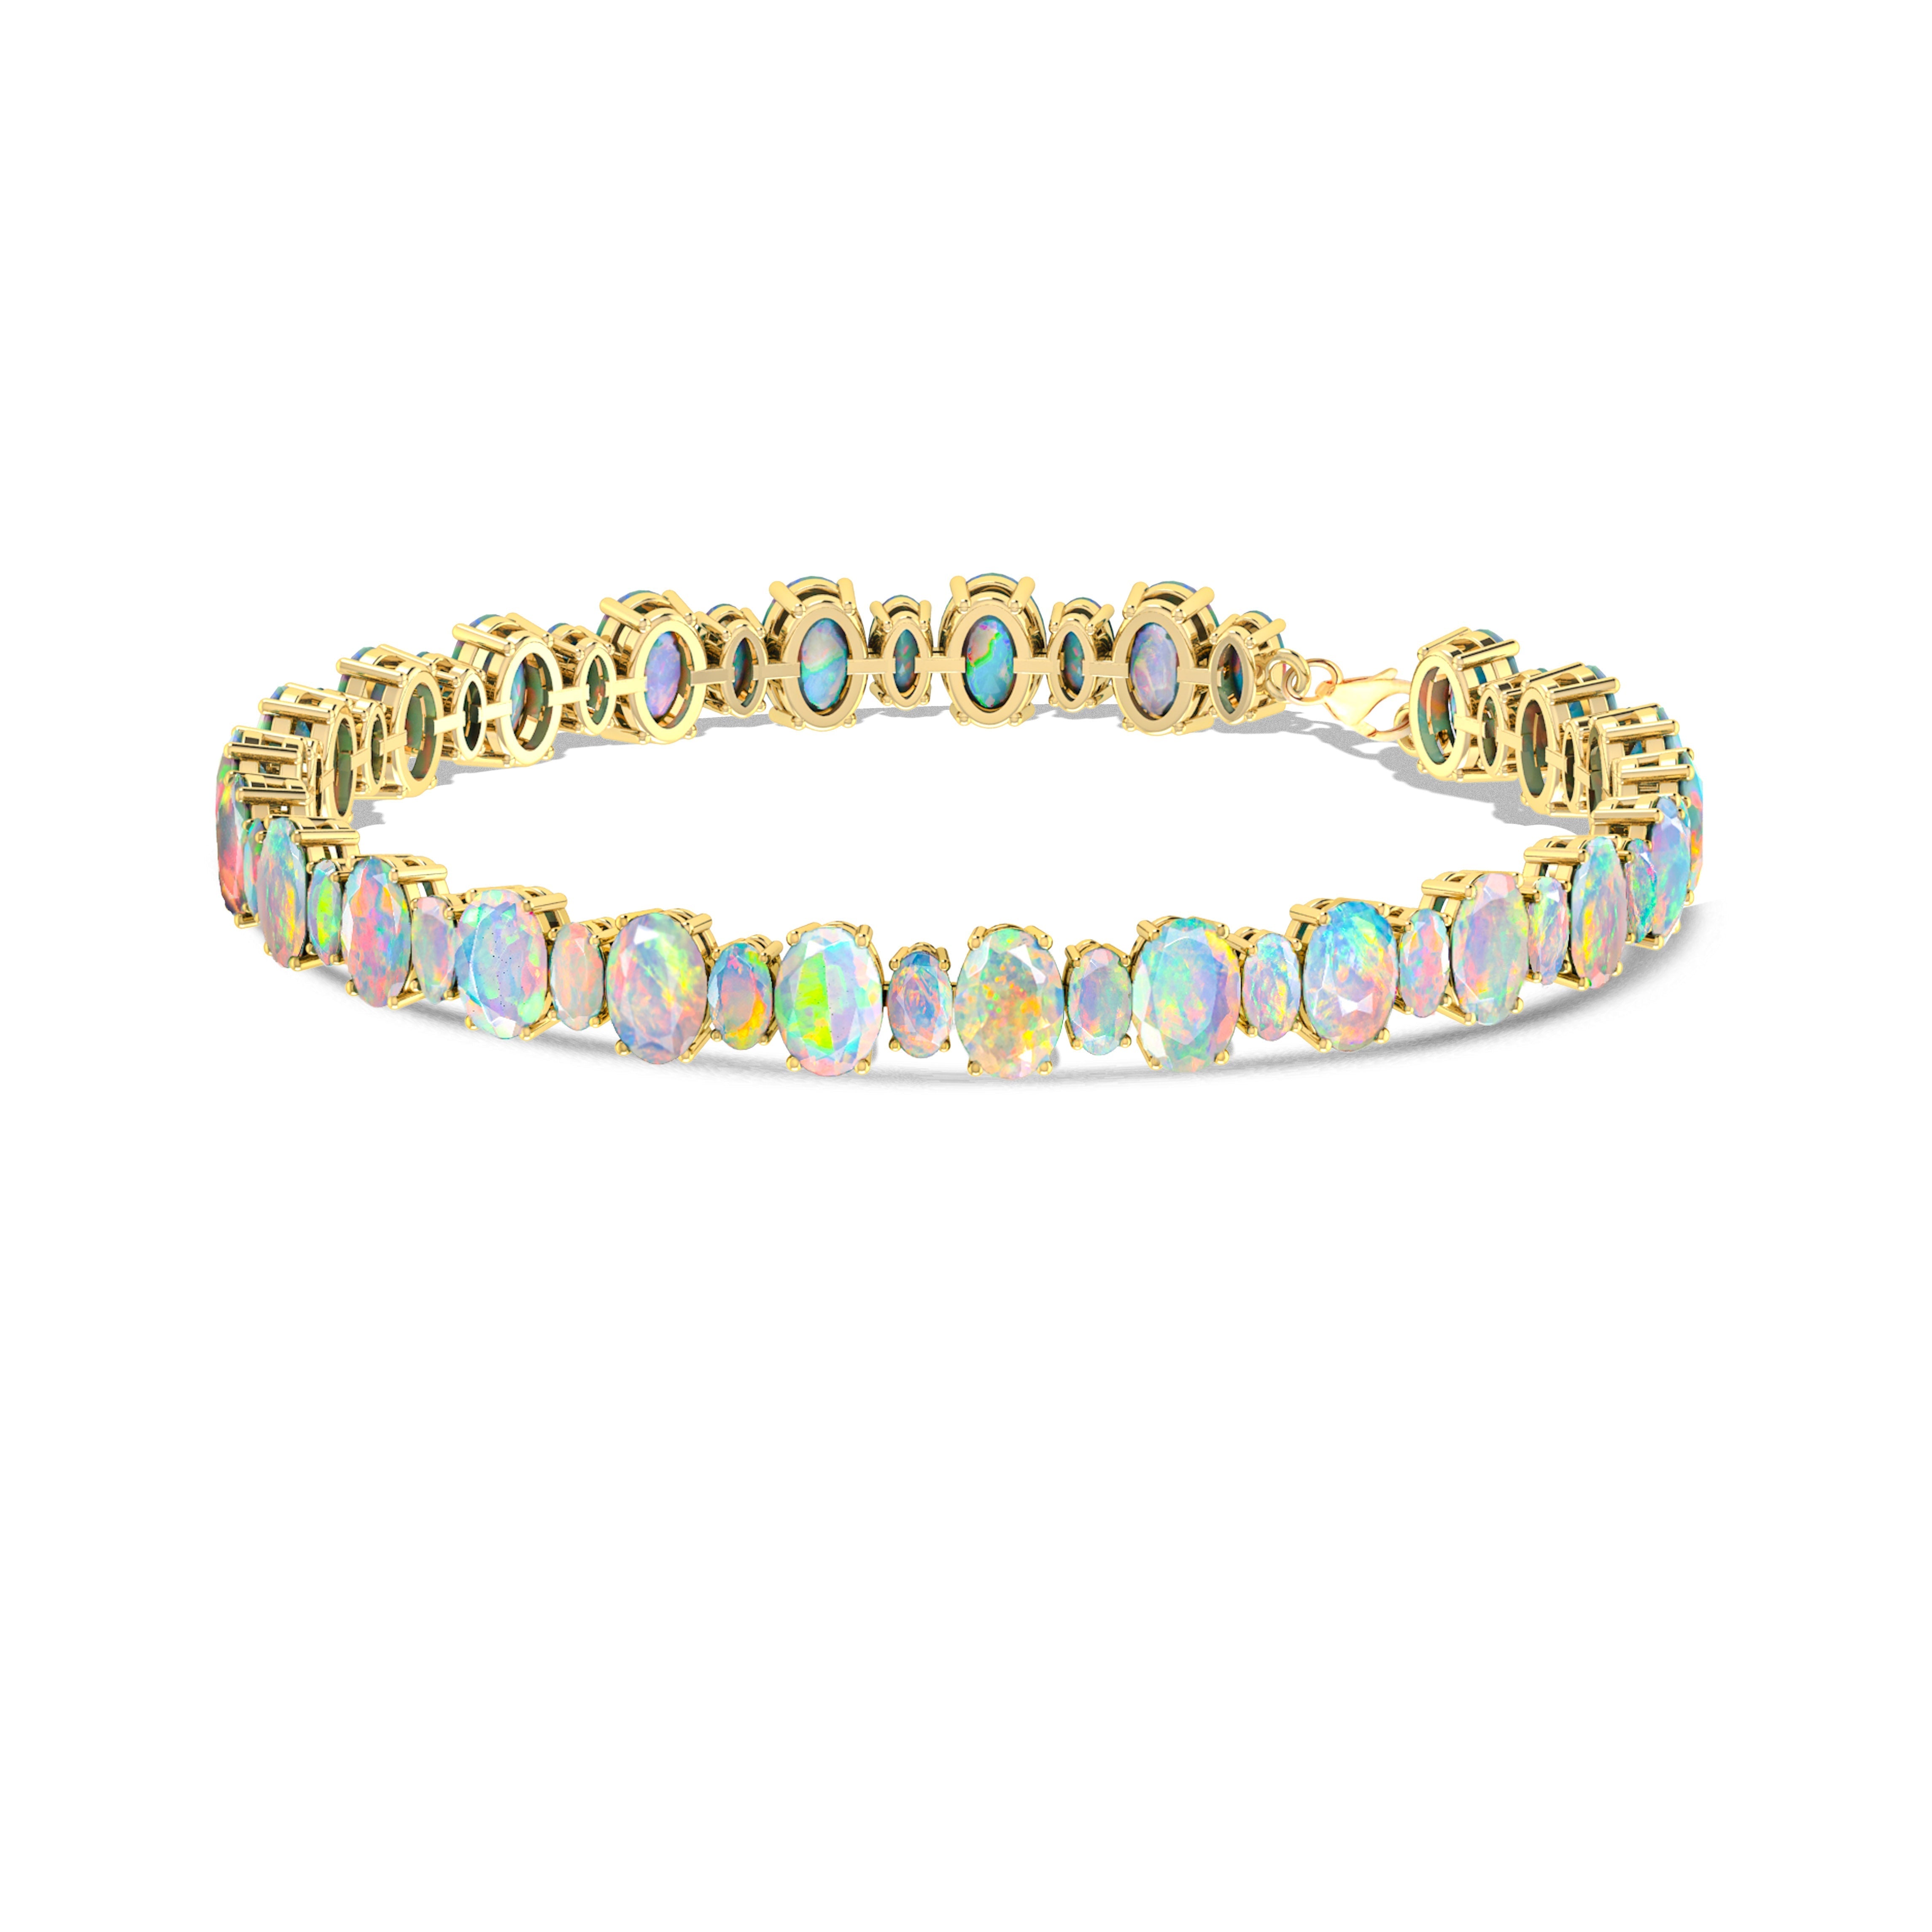 Blue Fire Opal Oval Shape Gemstone Bracelet